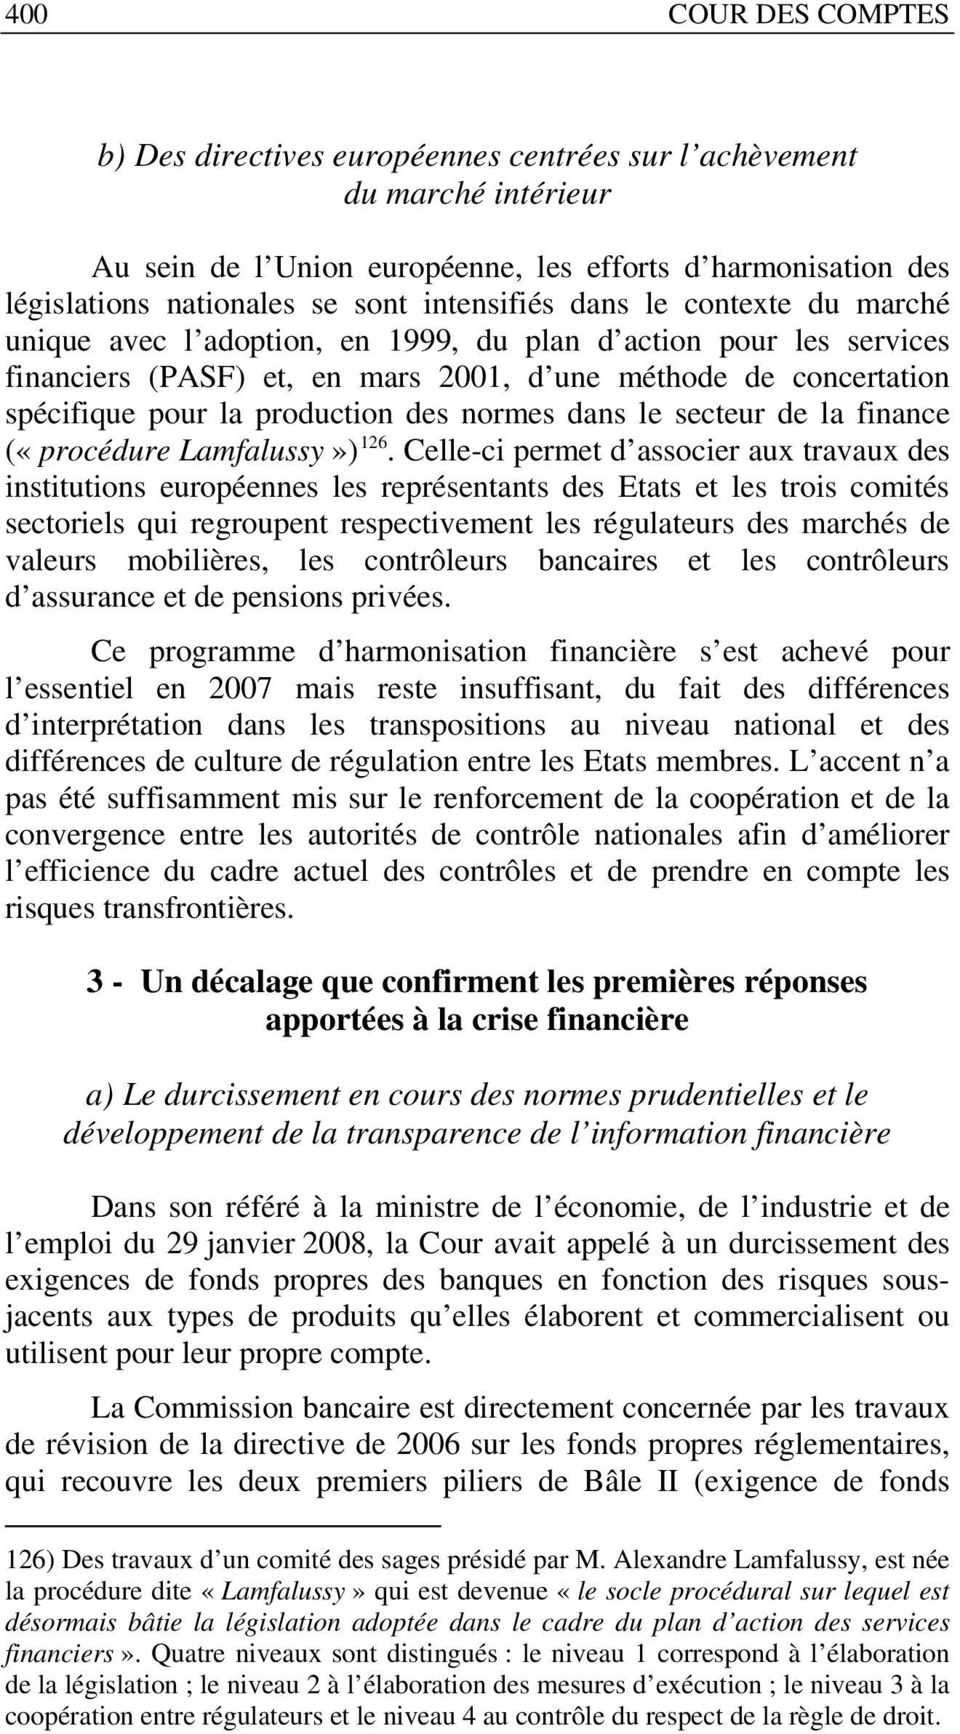 production des normes dans le secteur de la finance («procédure Lamfalussy») 126.